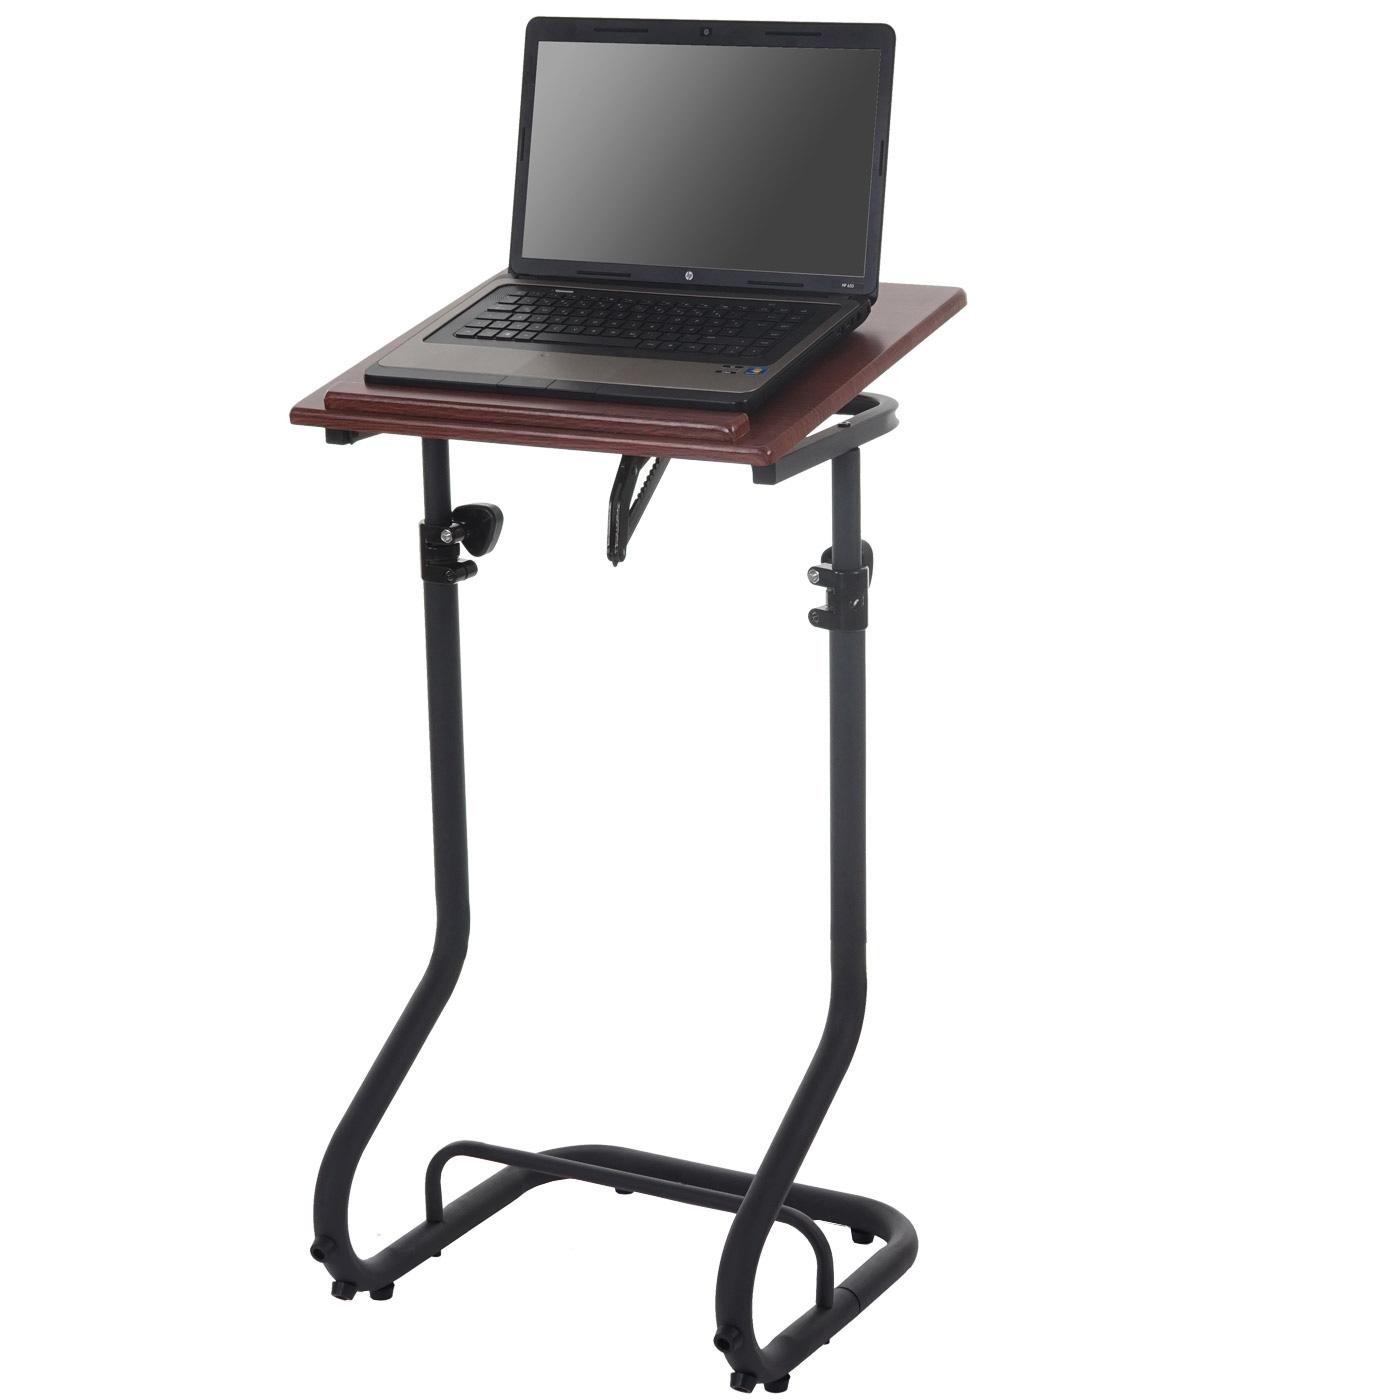 Tavolino / Leggio per Computer Portatile STAND PRO, Altezza regolabile, Ripiano in Legno color Noce